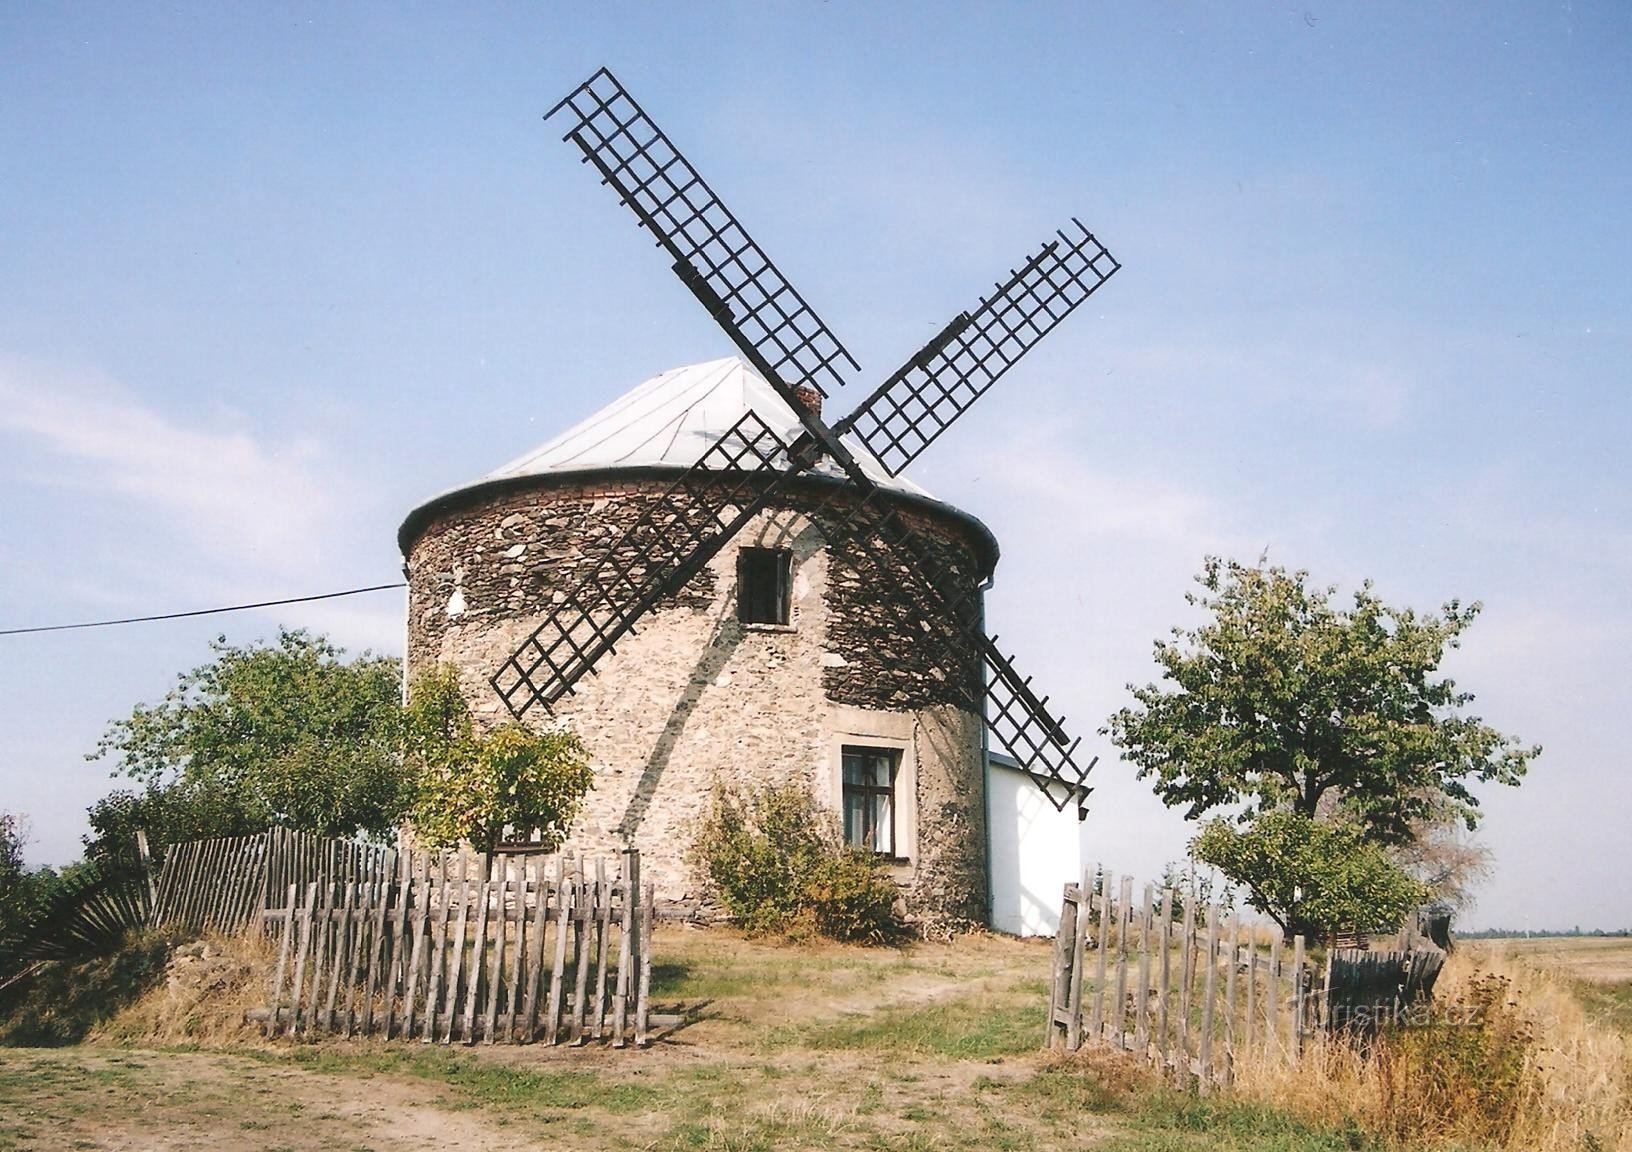 Eins - eine Windmühle